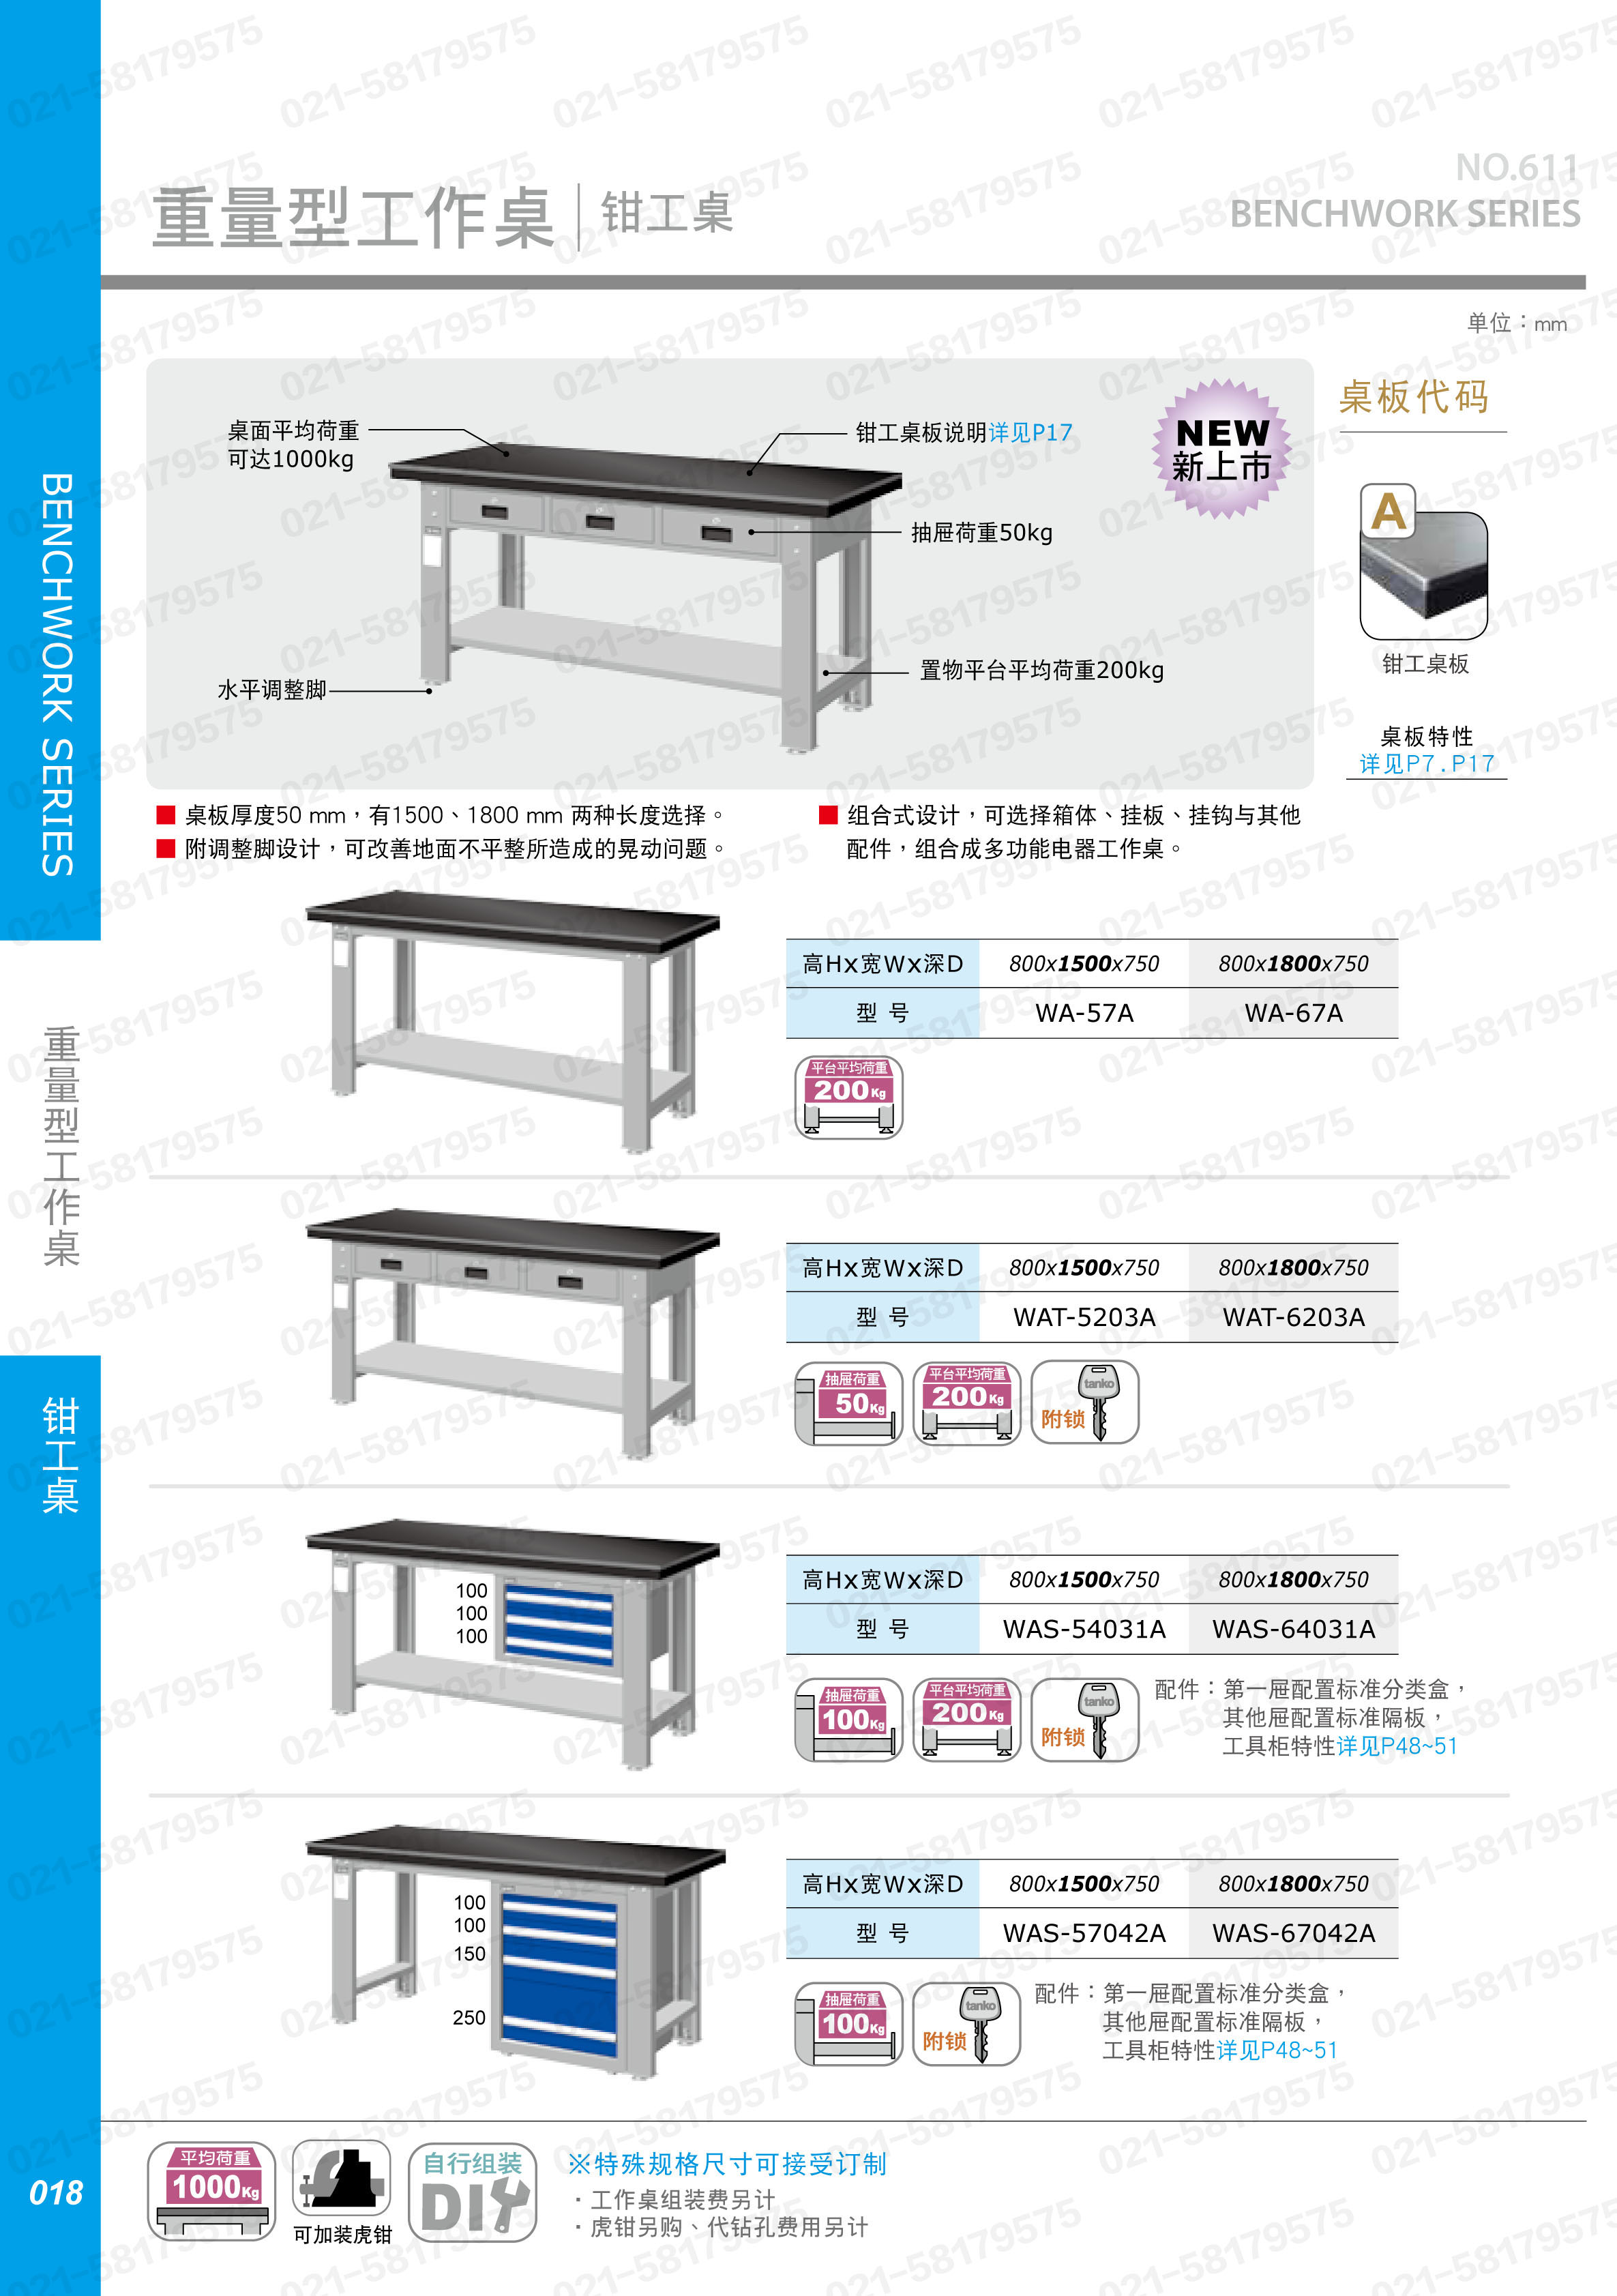 重型工作桌1500×750×800mm 钳工桌板 带四抽边柜,WAS-57042A,5D2926